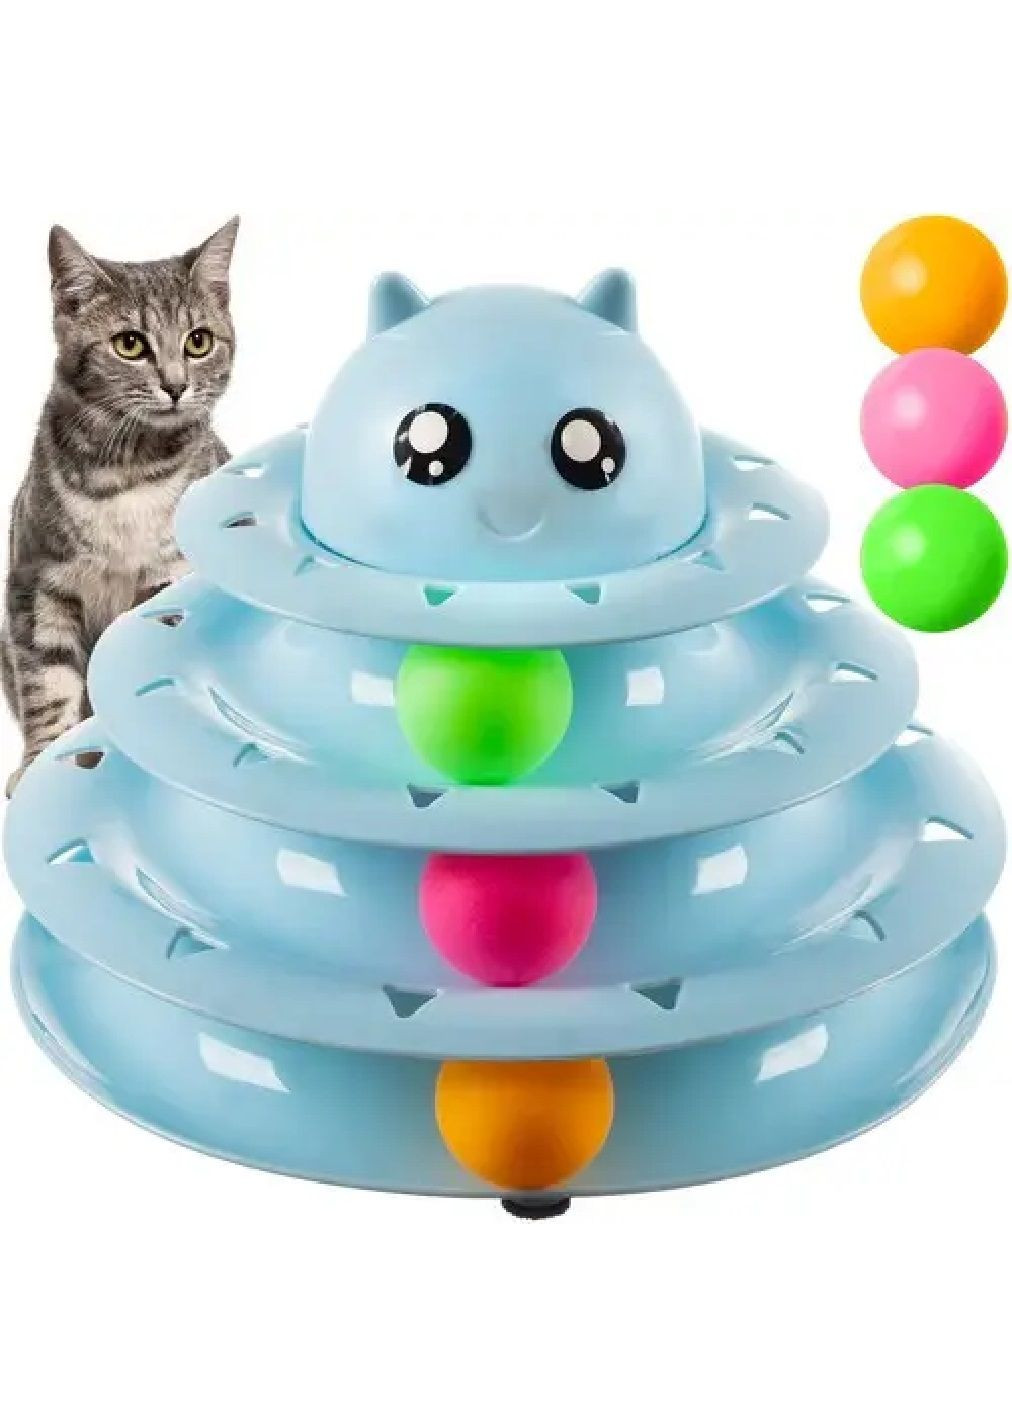 Игрушка игра башня с шариками противоскользящими накладками 3 уровня для кошек котов пластик 24х24х19 см (476596-Prob) Голубая Unbranded (285696180)